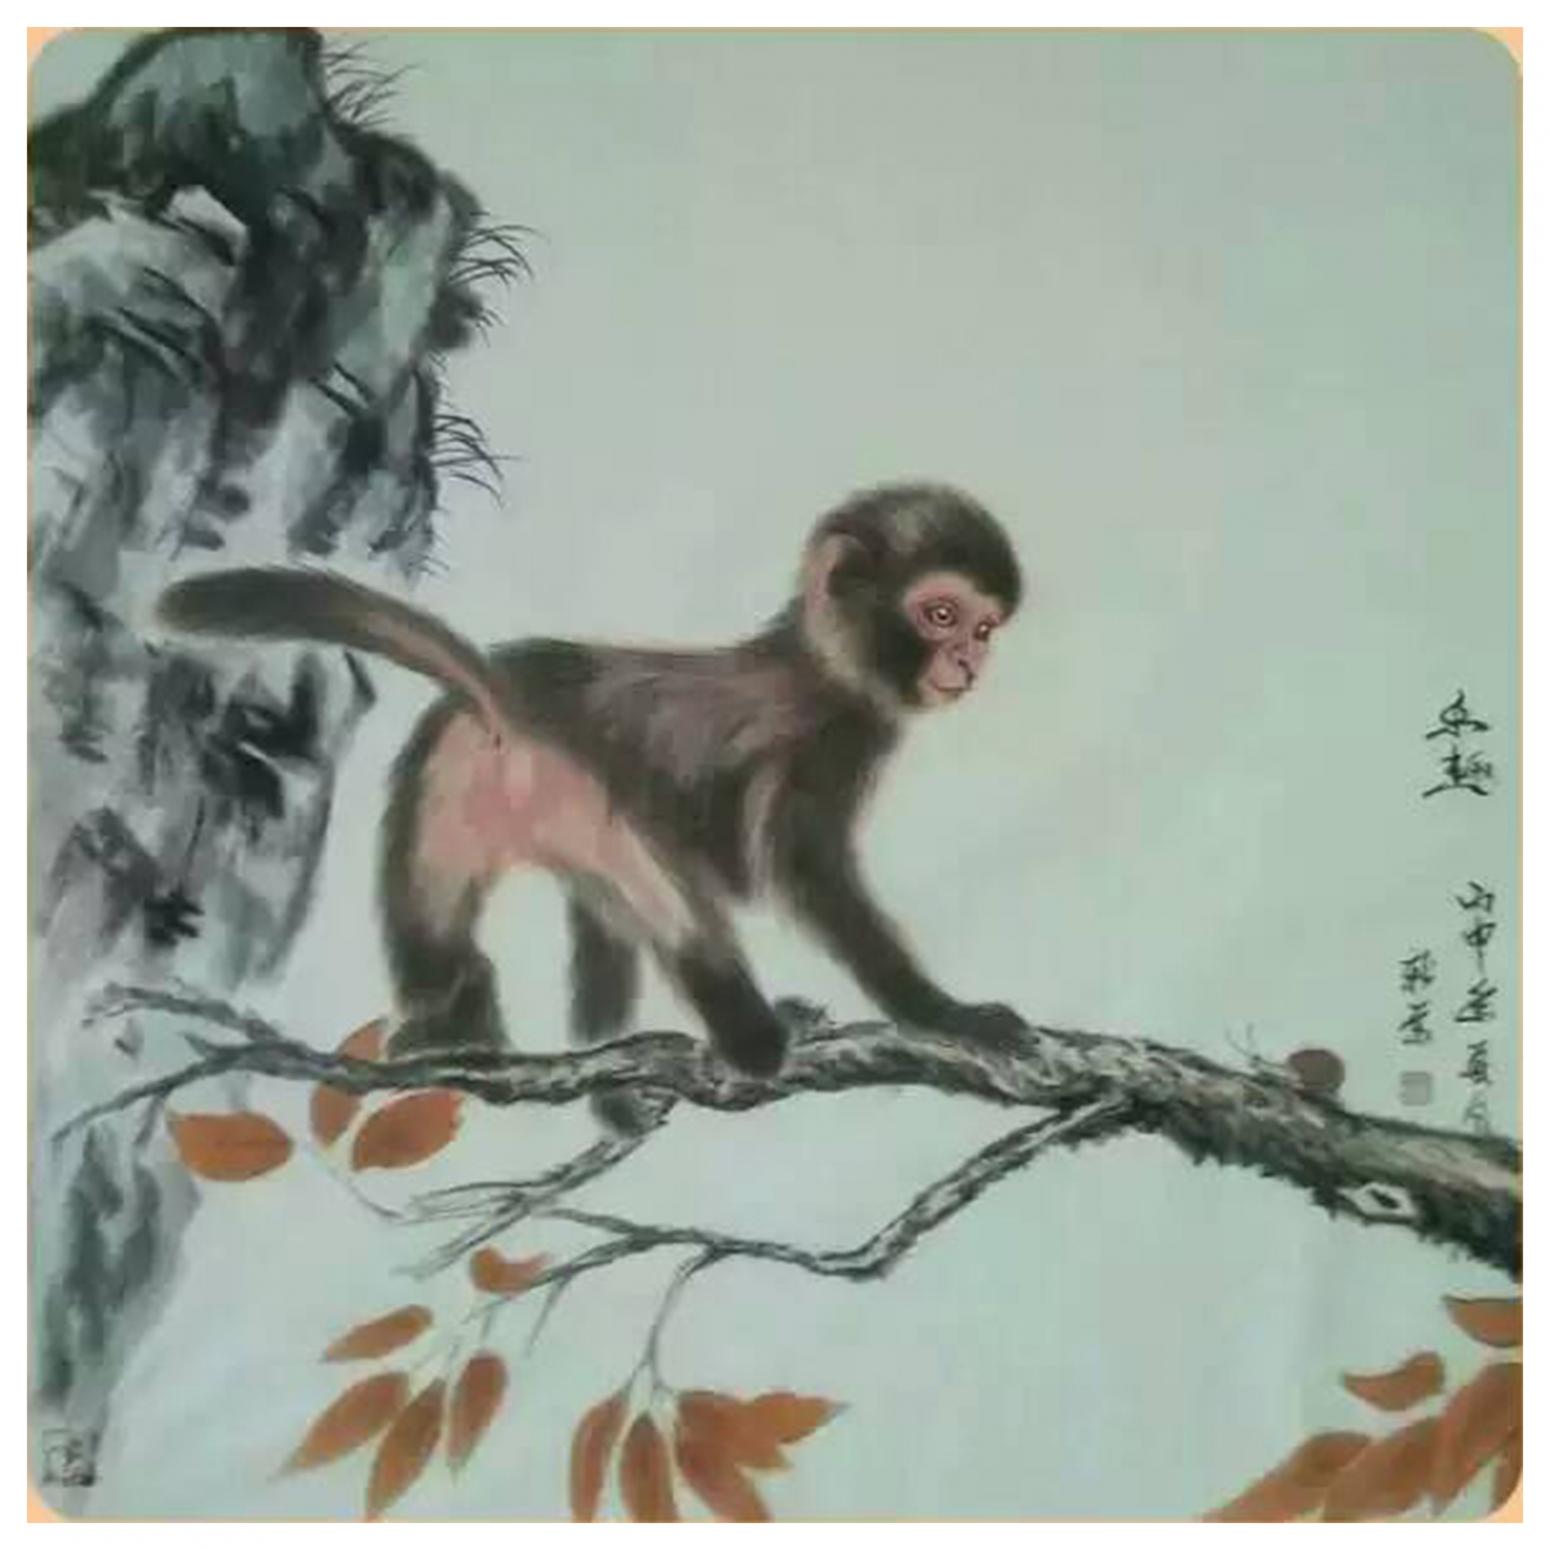 马新荣国画作品《【猴子】作者马新荣》